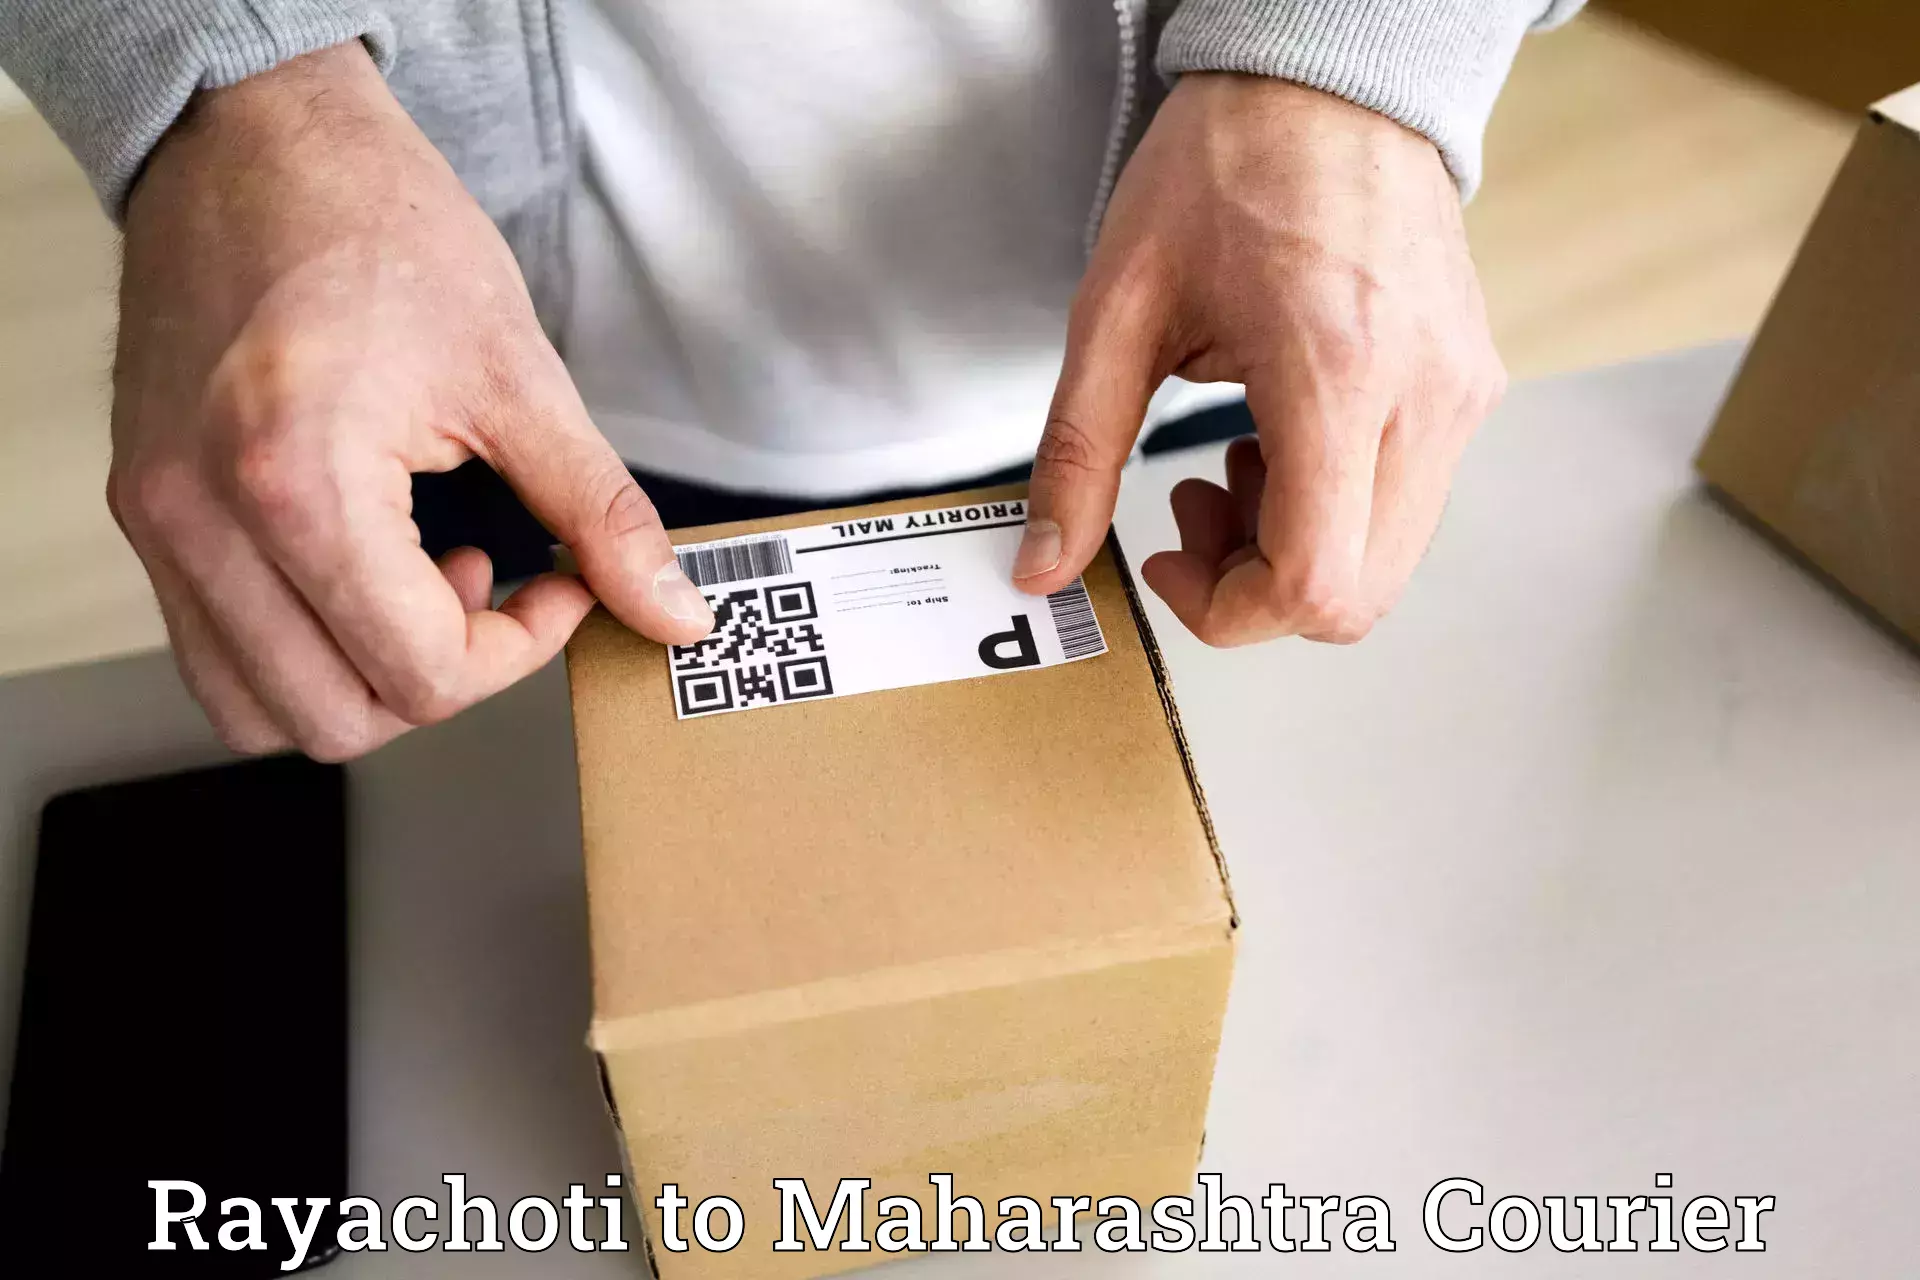 Automated shipping processes Rayachoti to Andheri